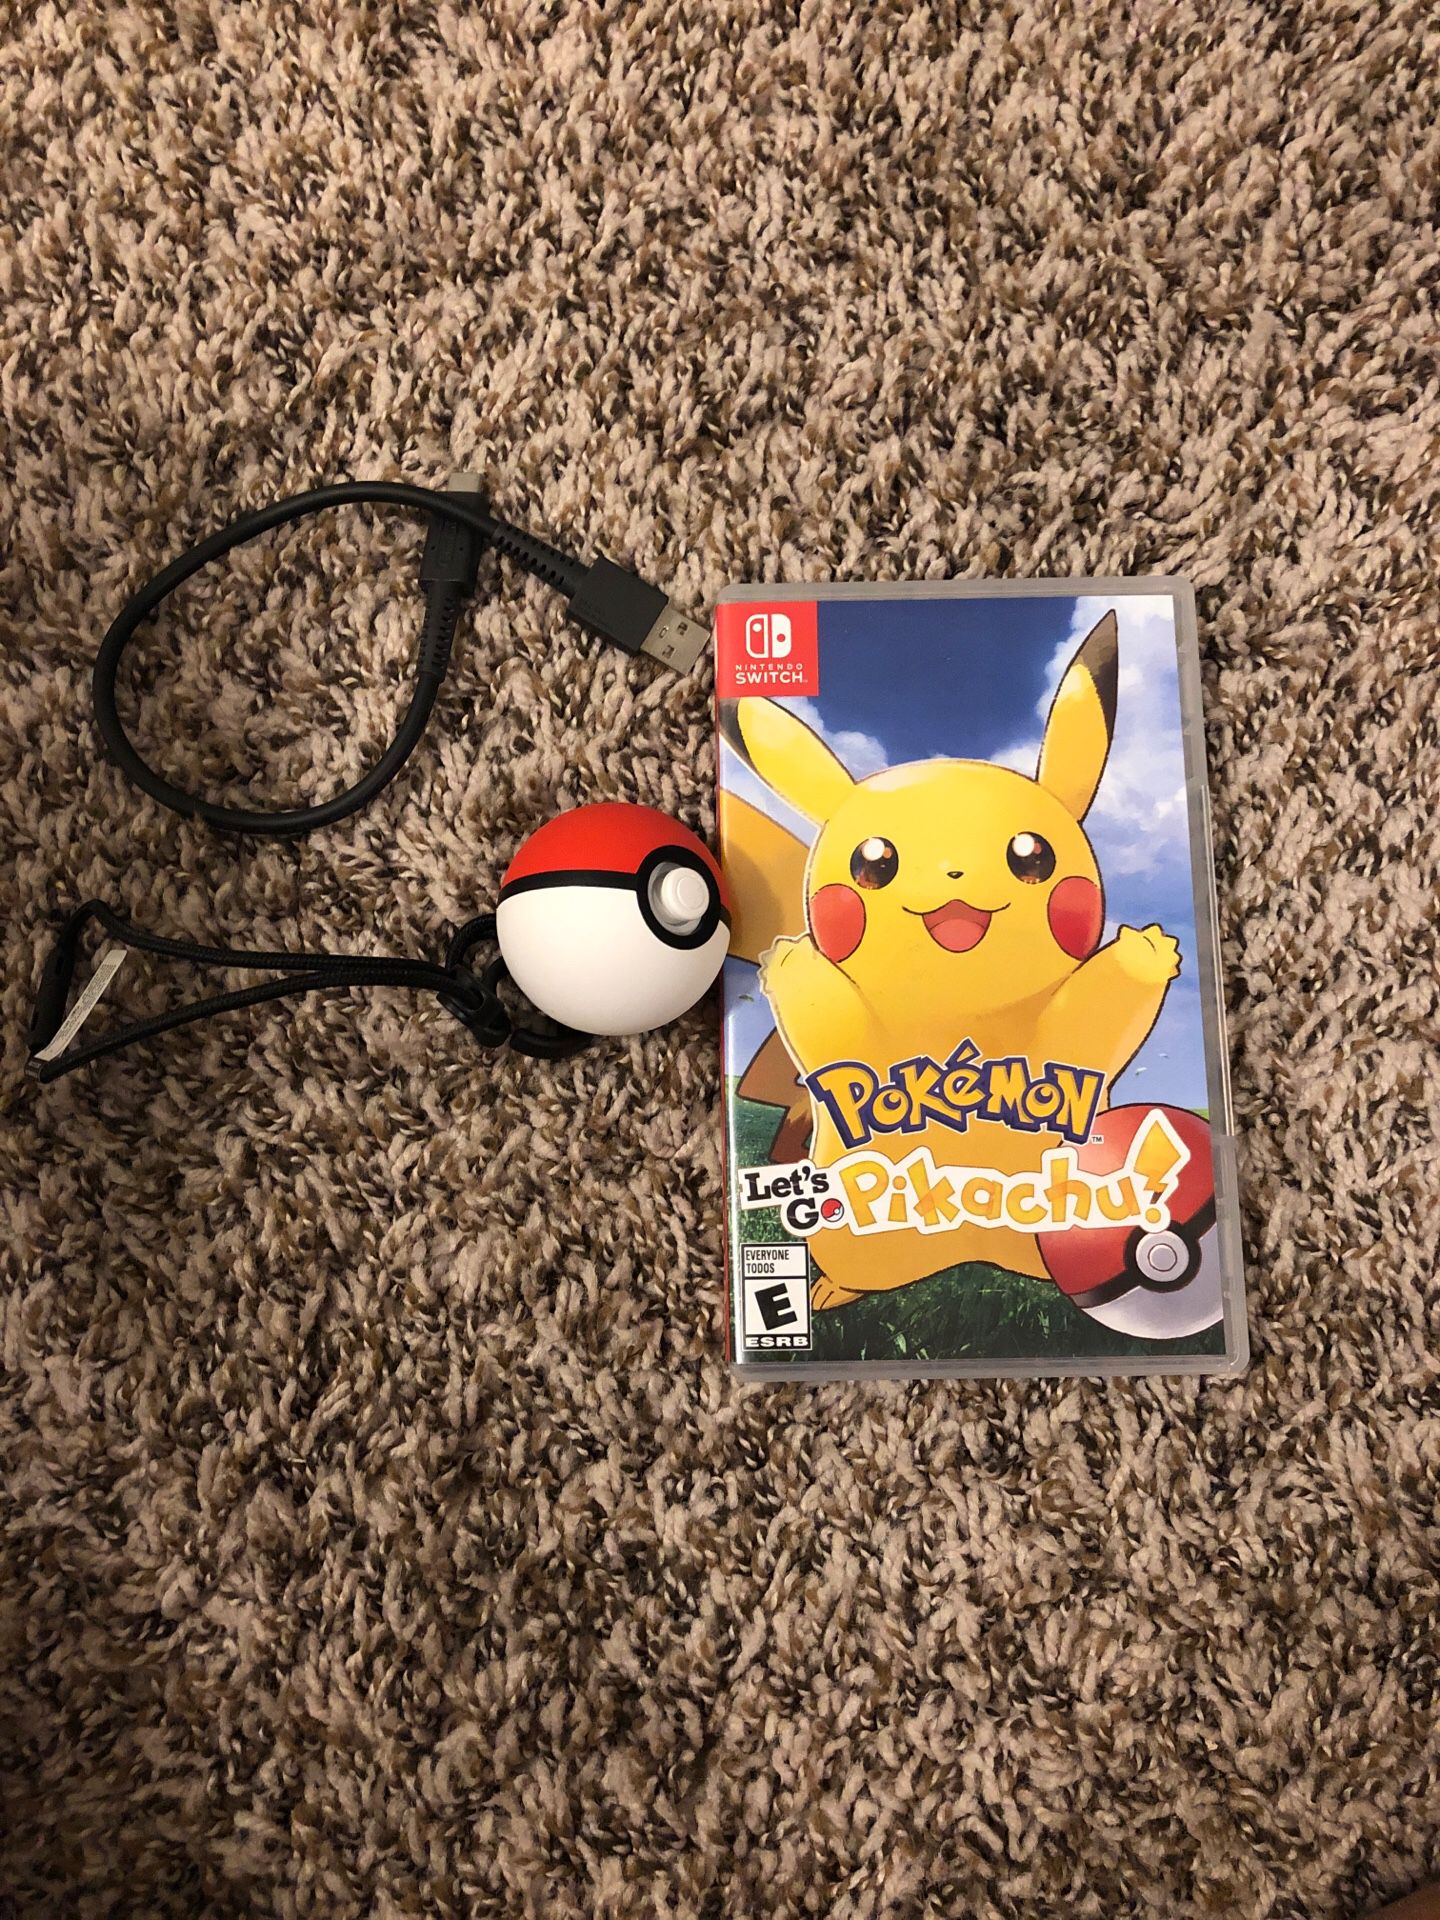 Nintendo Switch Pokémon with Poke Ball Plus